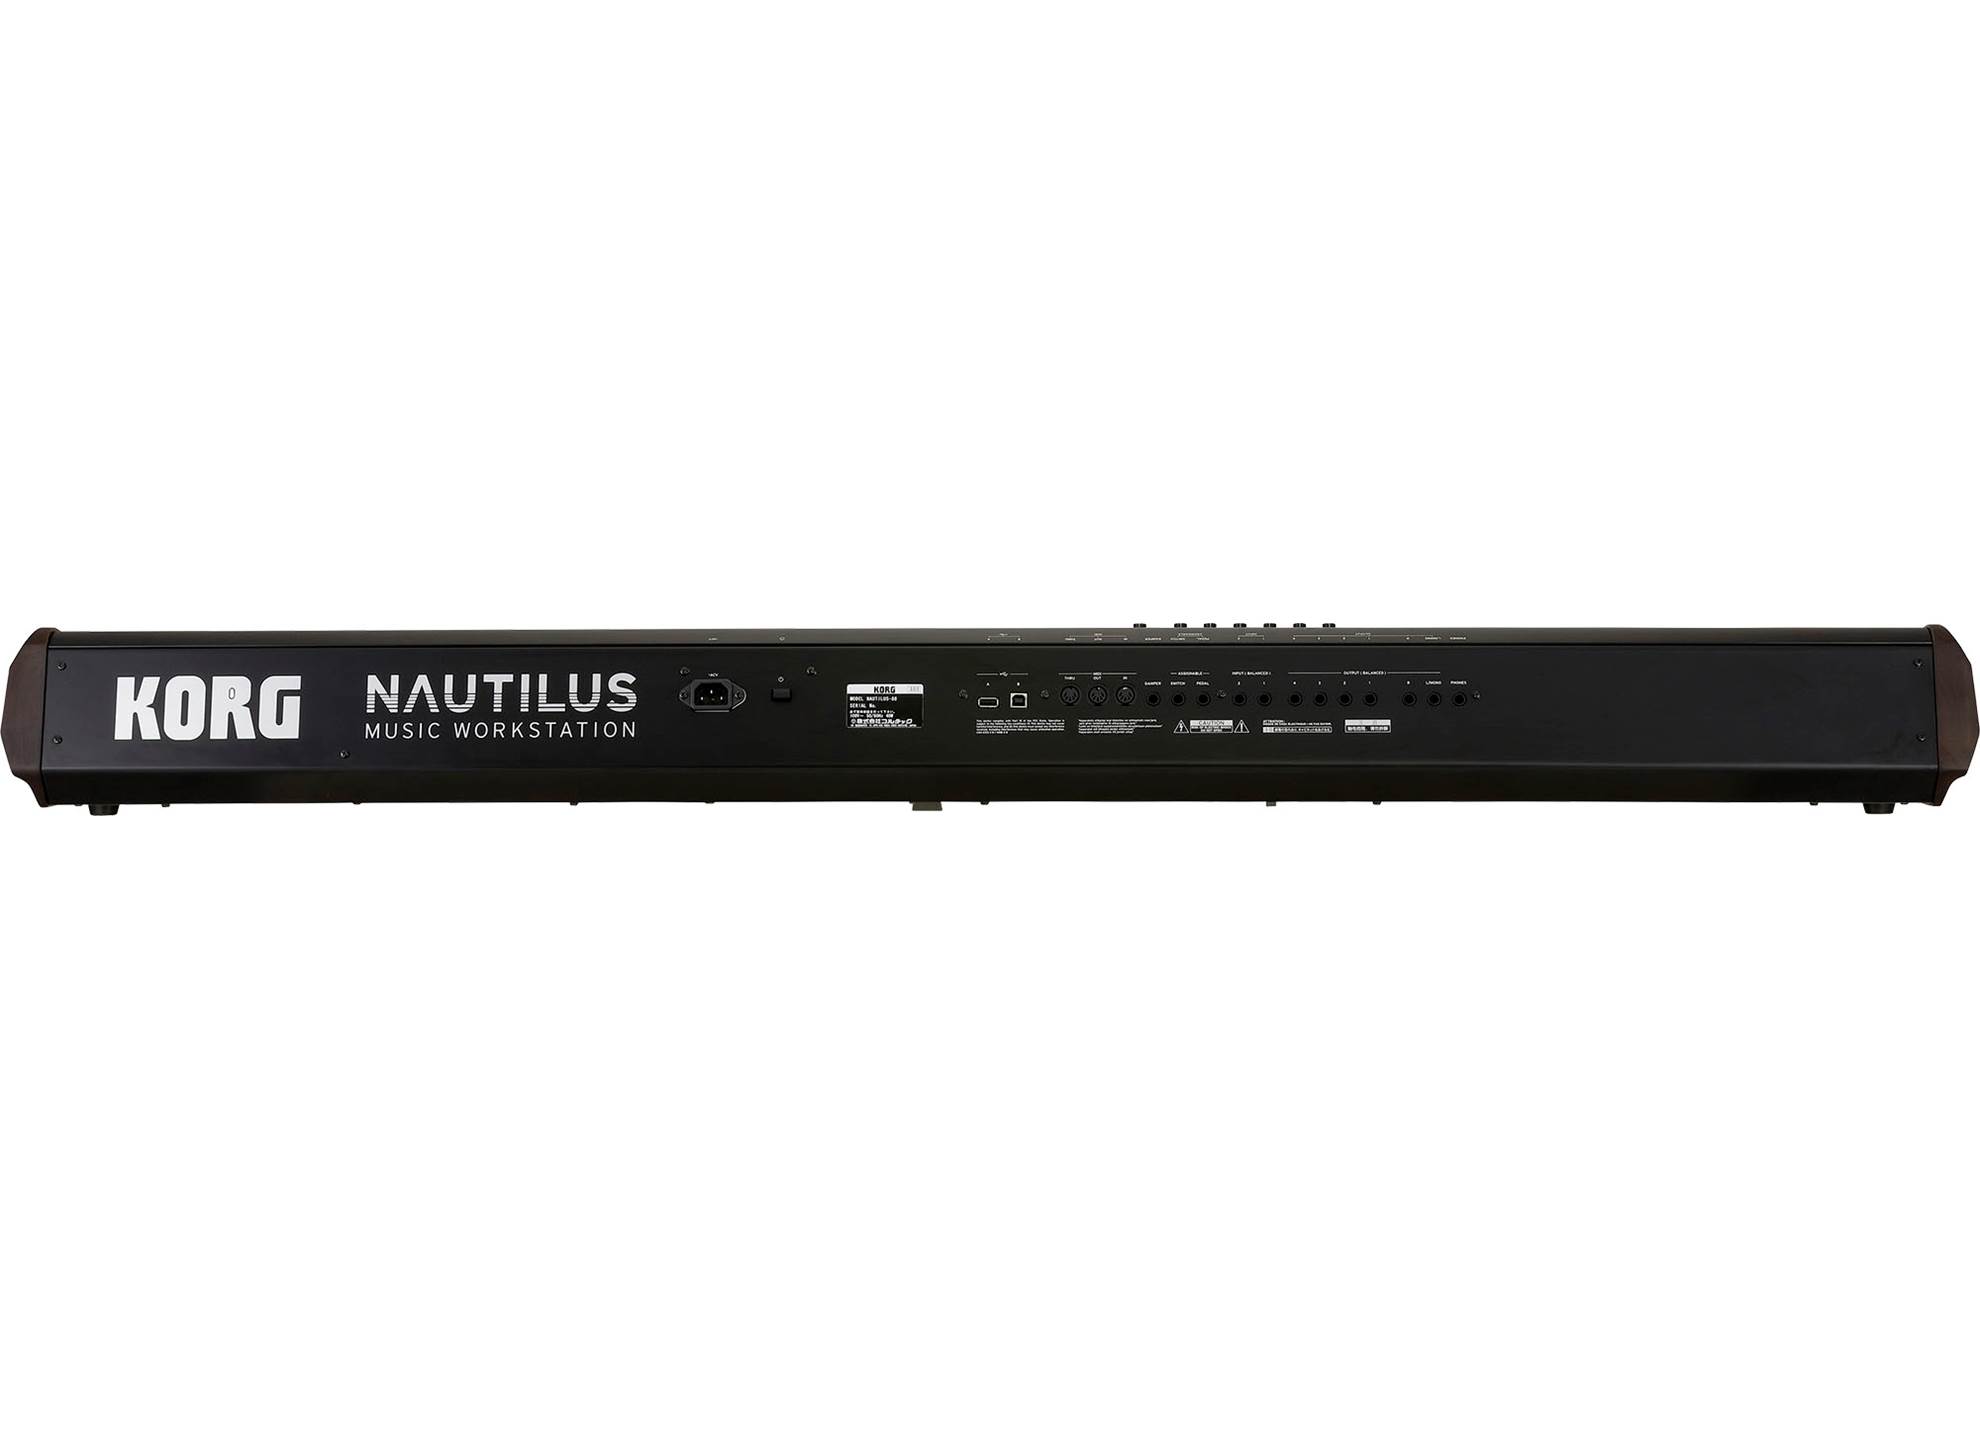 Nautilus 88